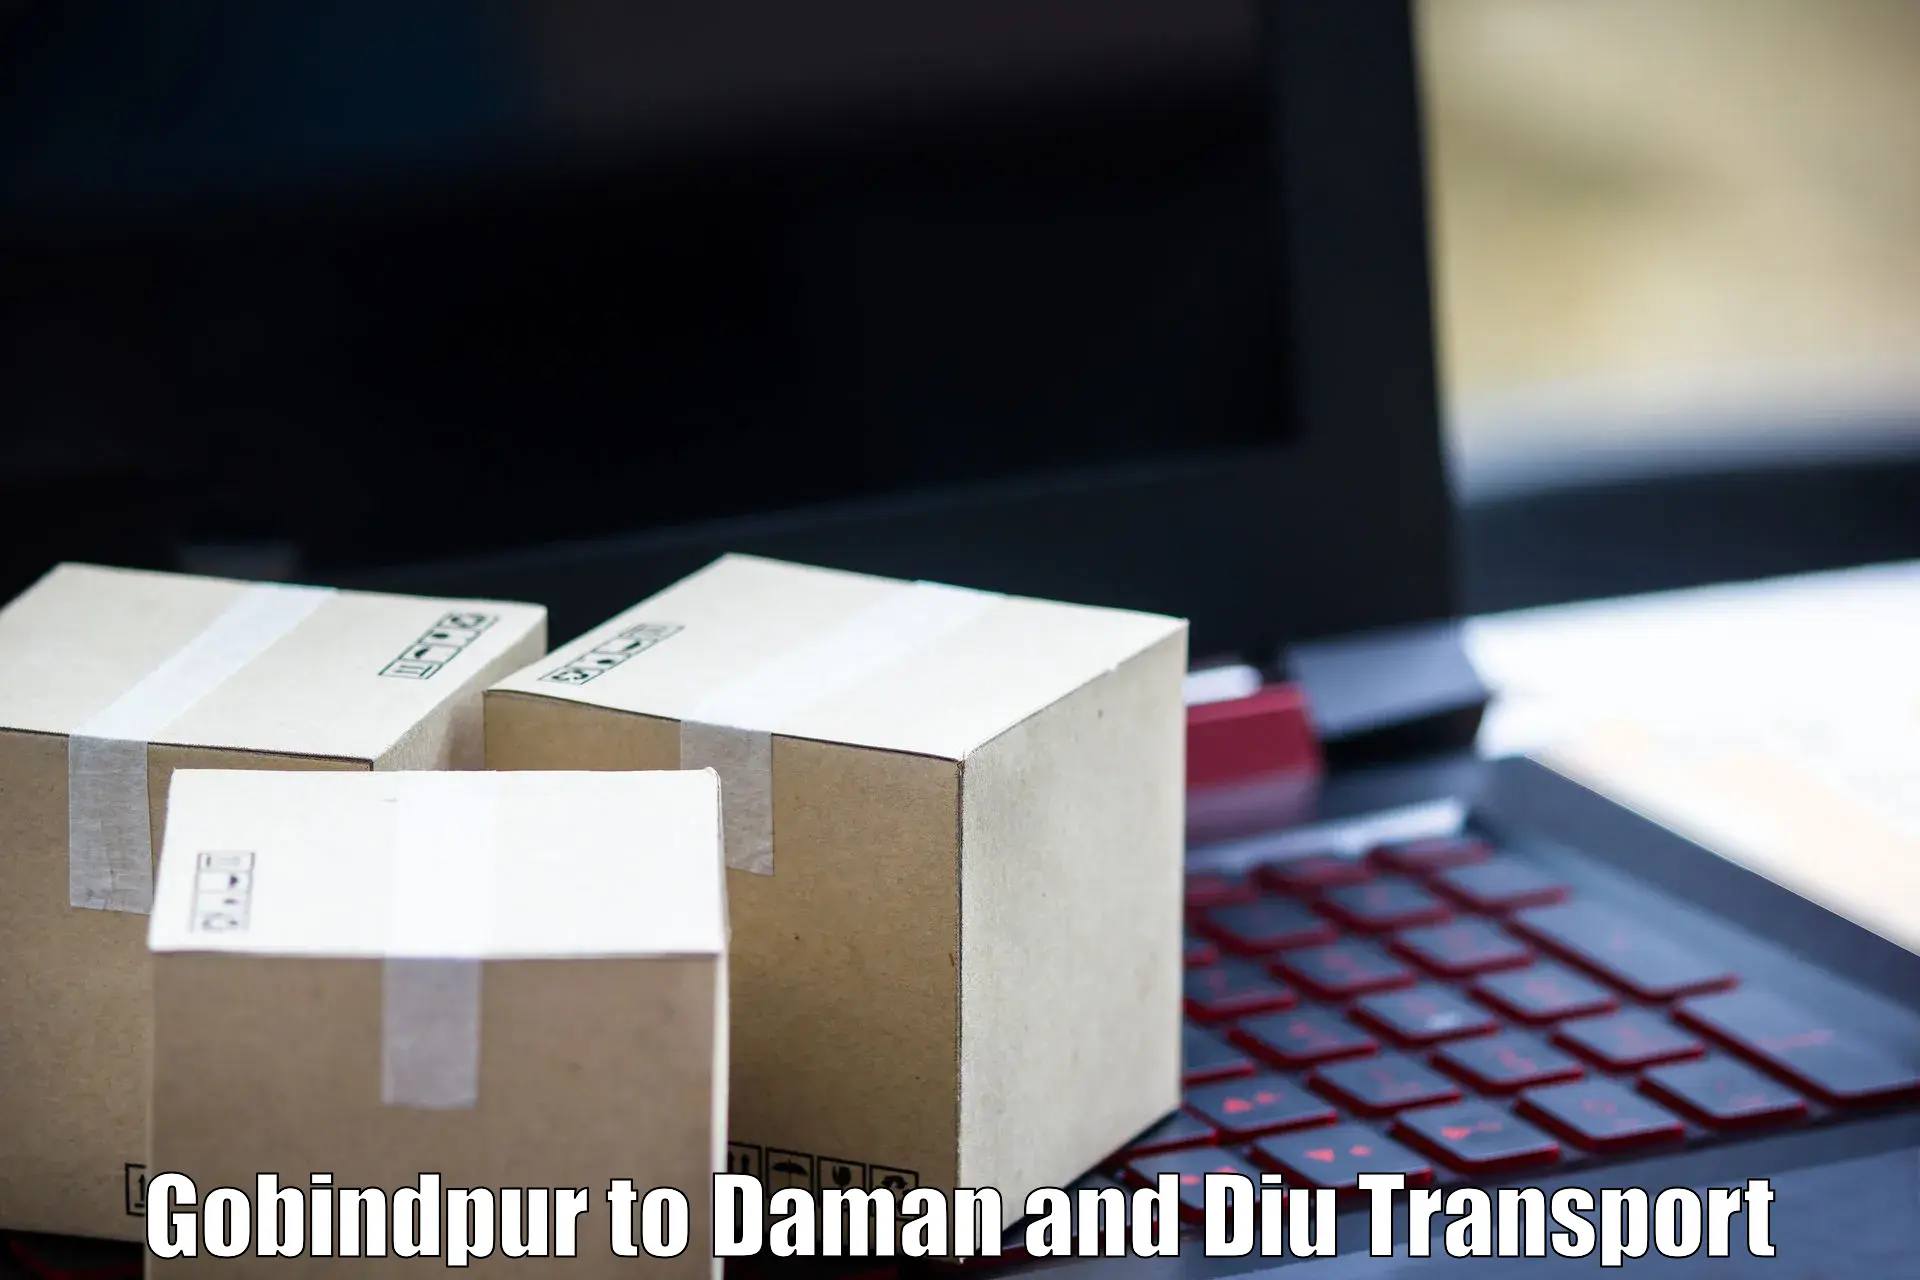 Bike shipping service Gobindpur to Daman and Diu